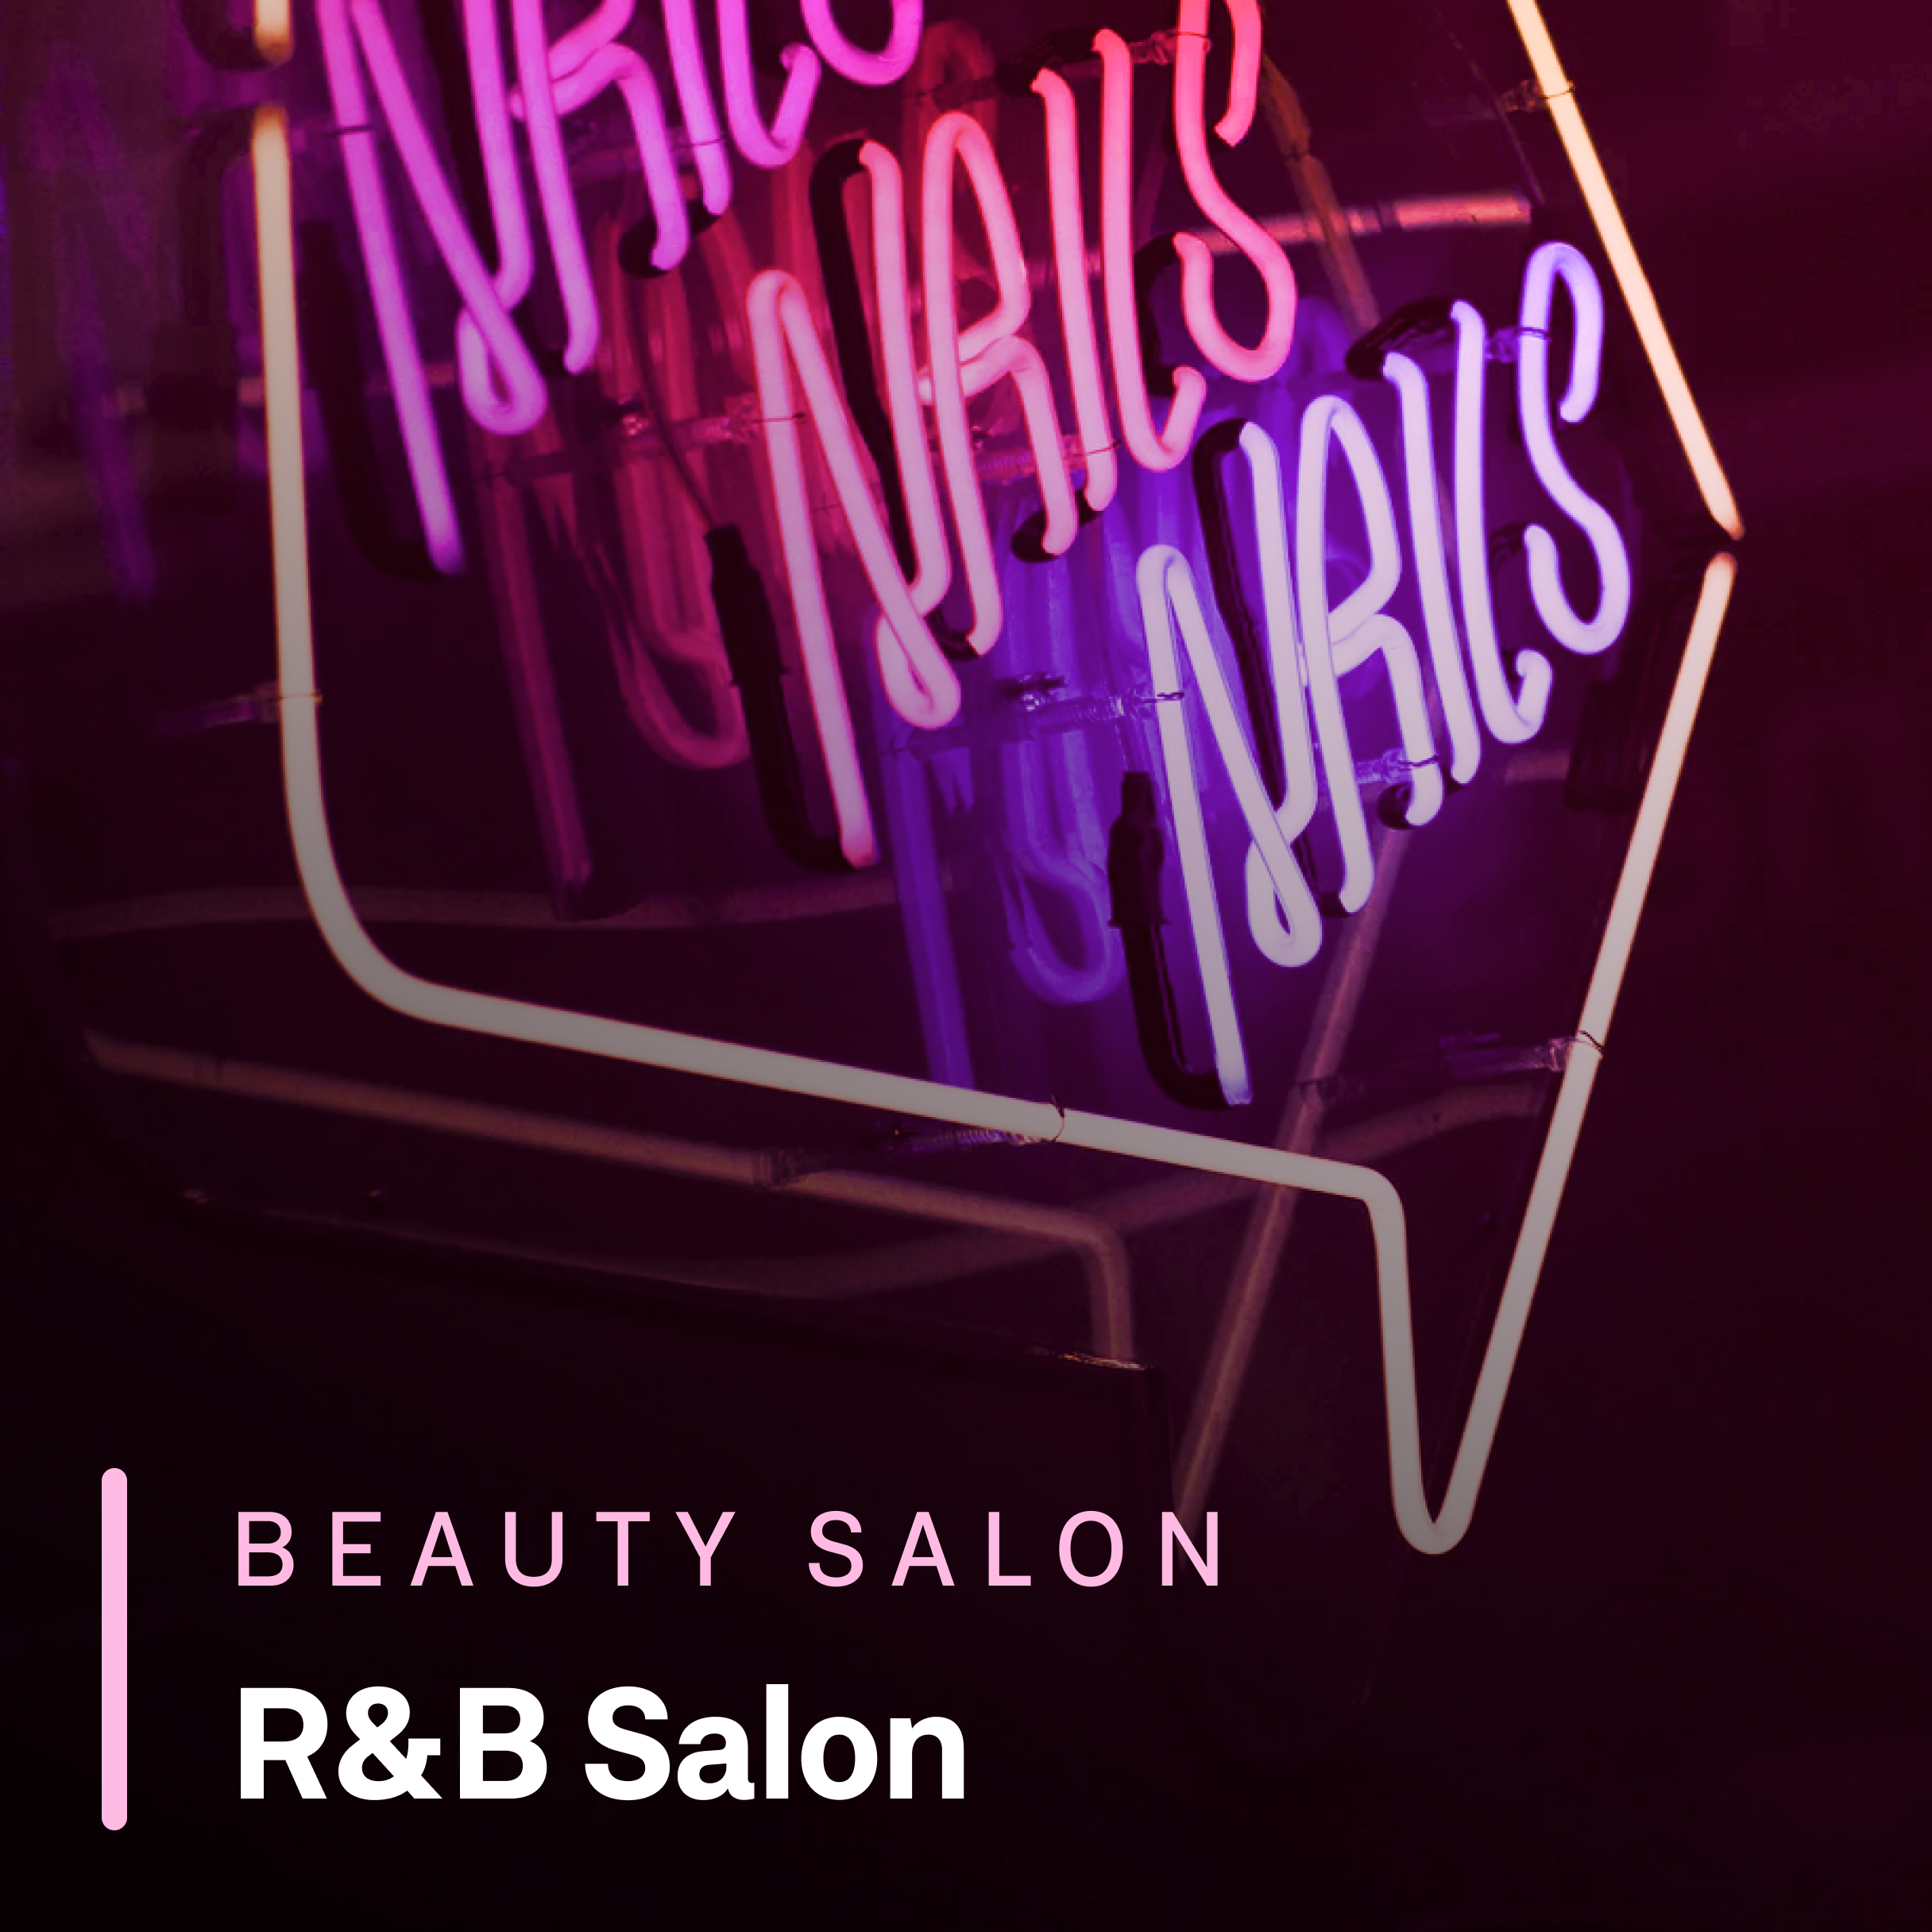 R&B Salon